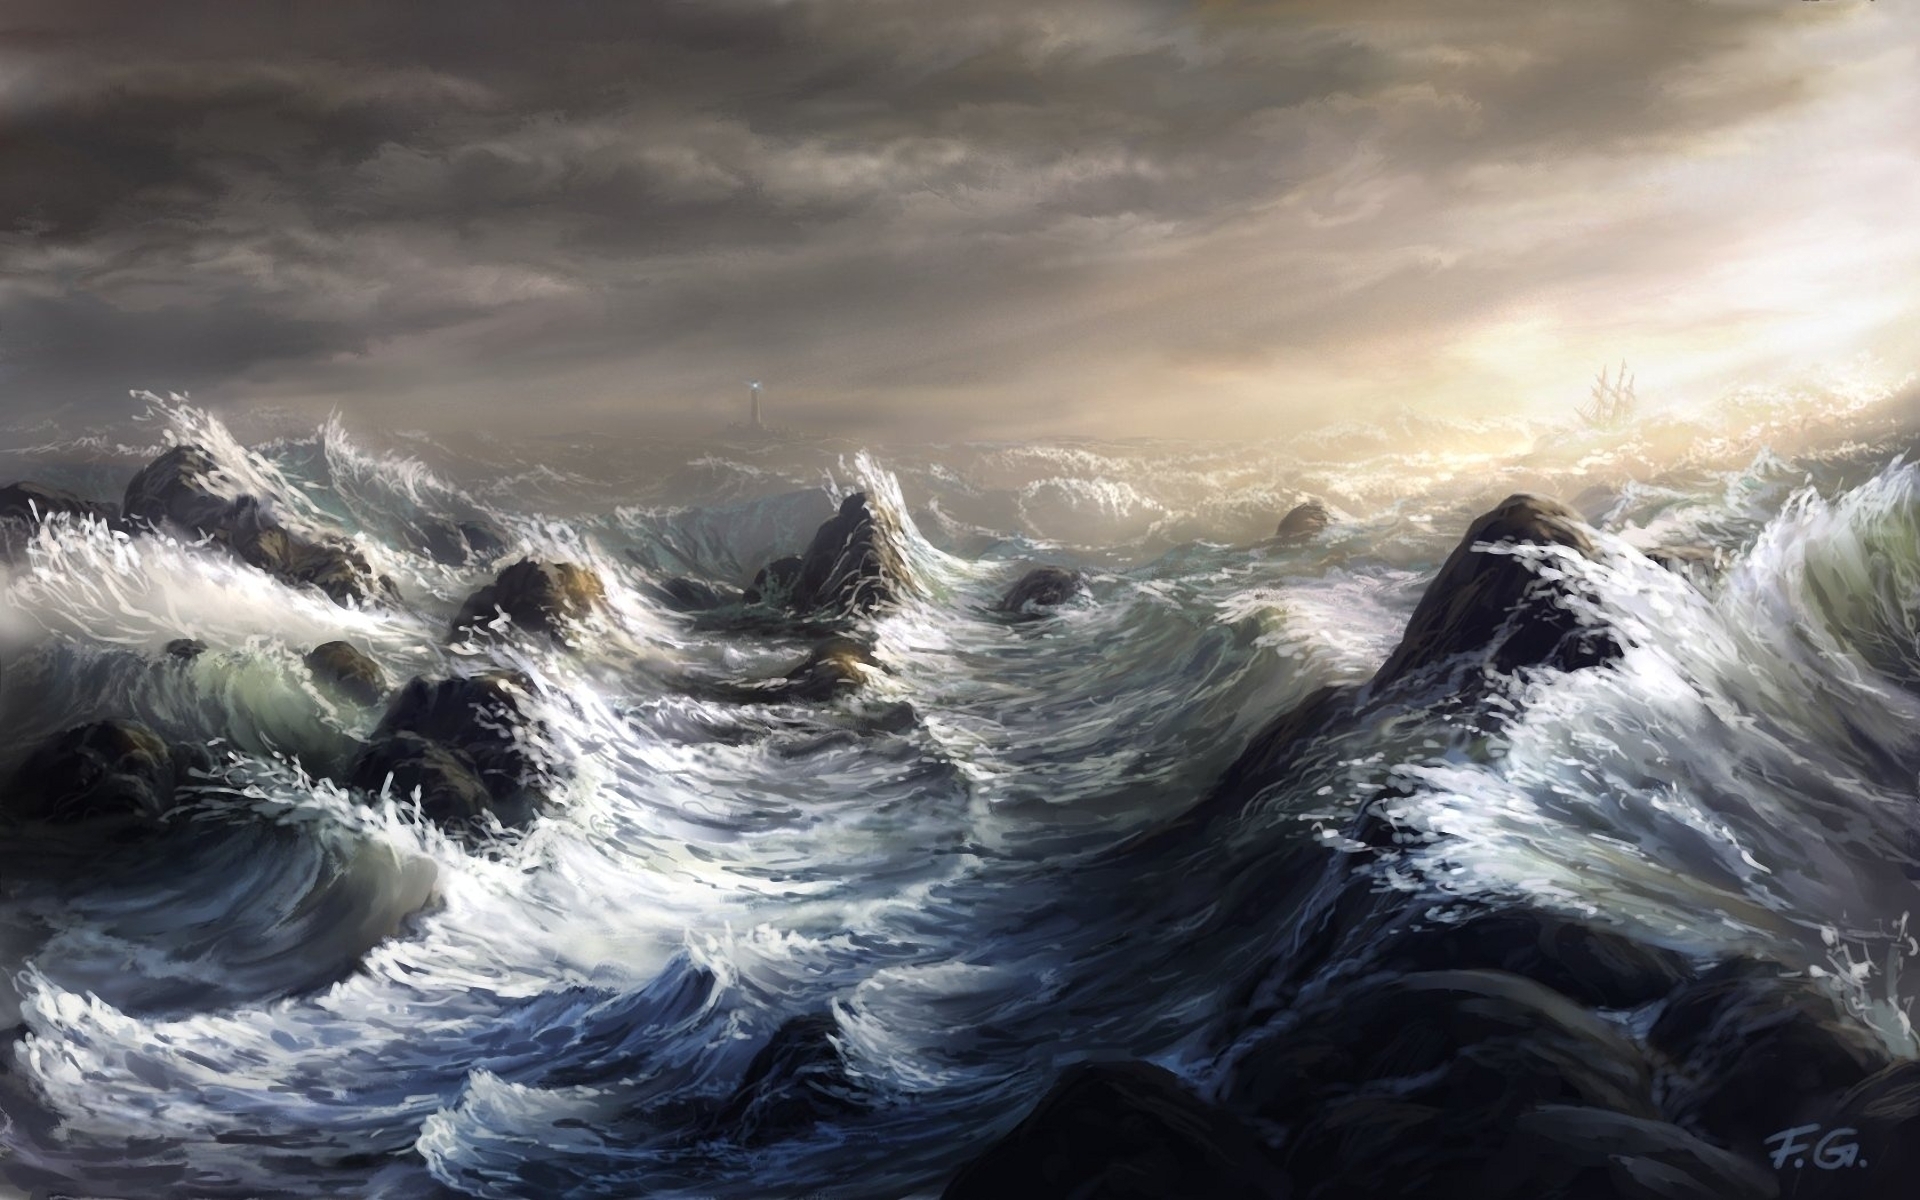 Stormy ocean by Fel-X